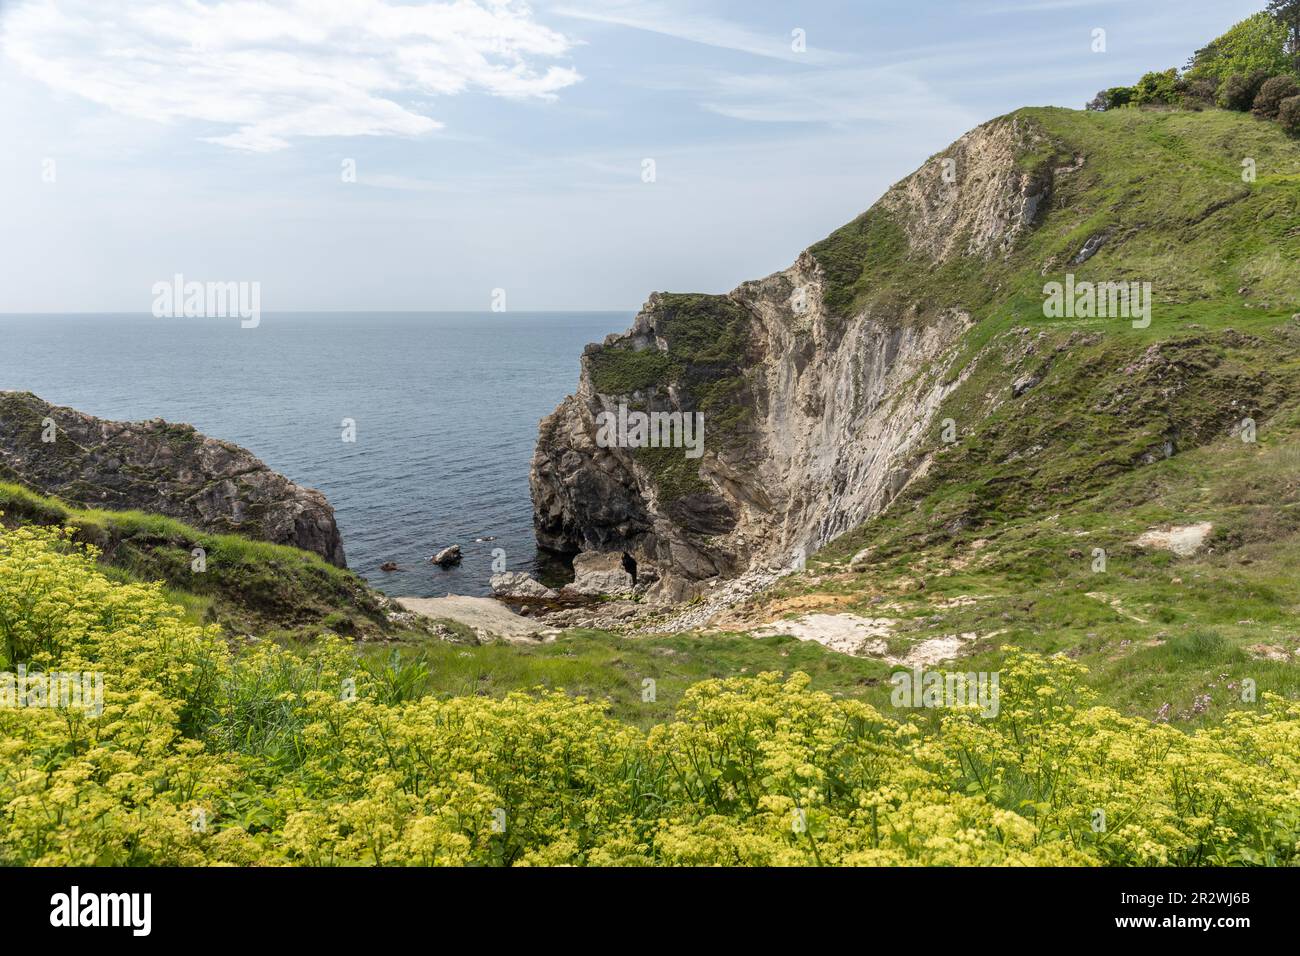 Folded limestone strata at Lulworth Cove, Dorset, England, UK. UNESCO World Heritage Site Stock Photo